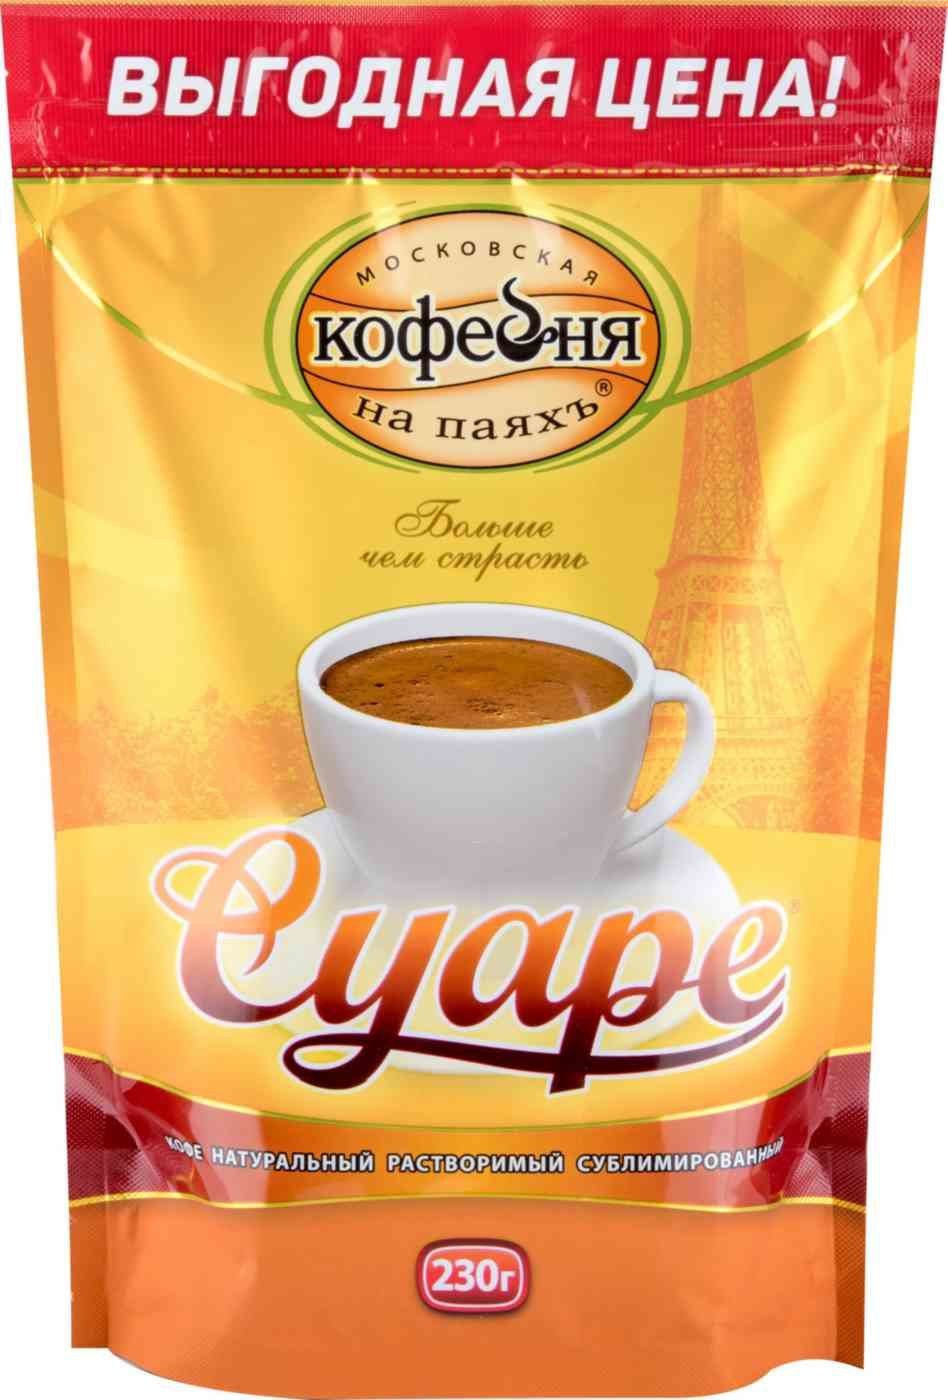 Кофе Суаре Московская кофейня